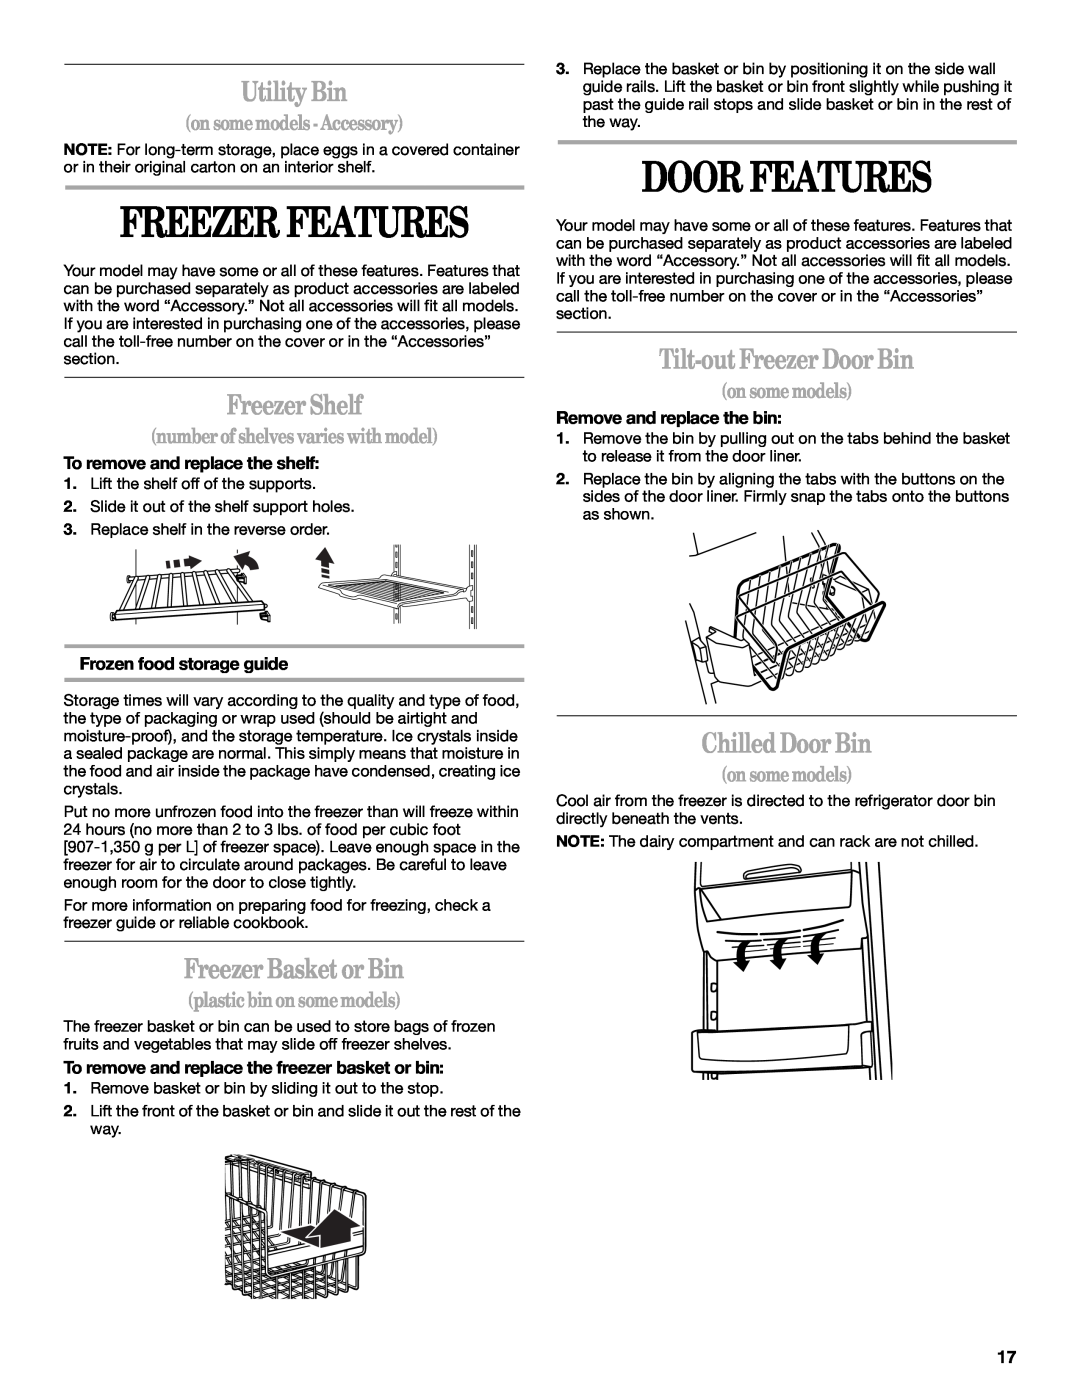 Whirlpool KTRP22EMBL01 Freezer Features, Door Features, Utility Bin, Freezer Shelf, Freezer Basket or Bin, on some models 